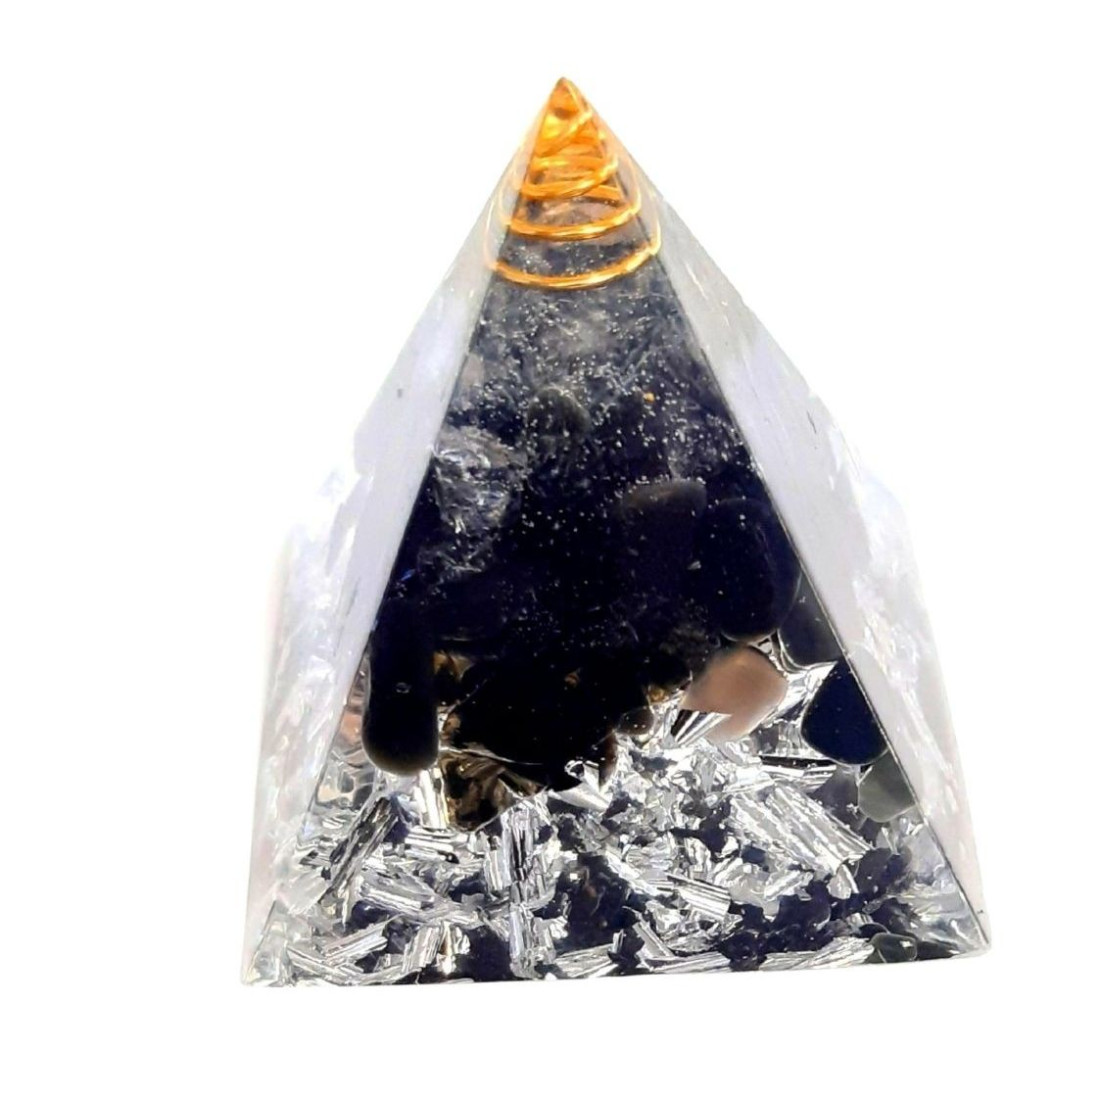 Pyramide orgonite orgone en résine, cristal de roche, onyx, copeaux argentés orgo9 5cm